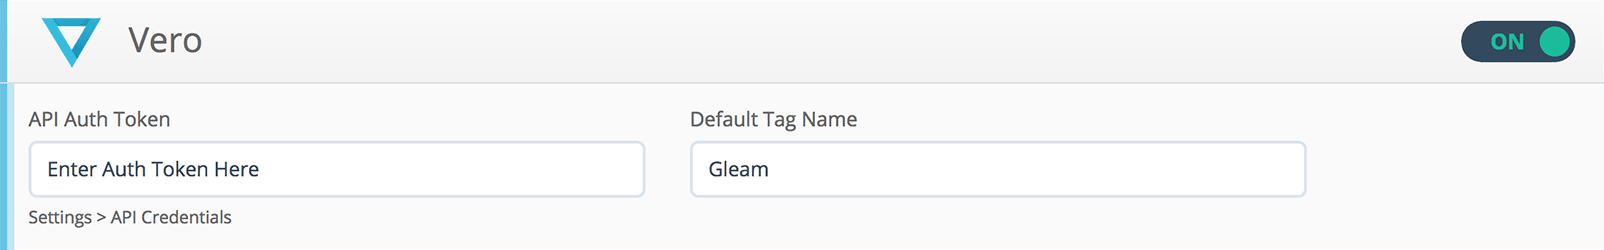 Connect your Vero API Auth Token to Gleam.io